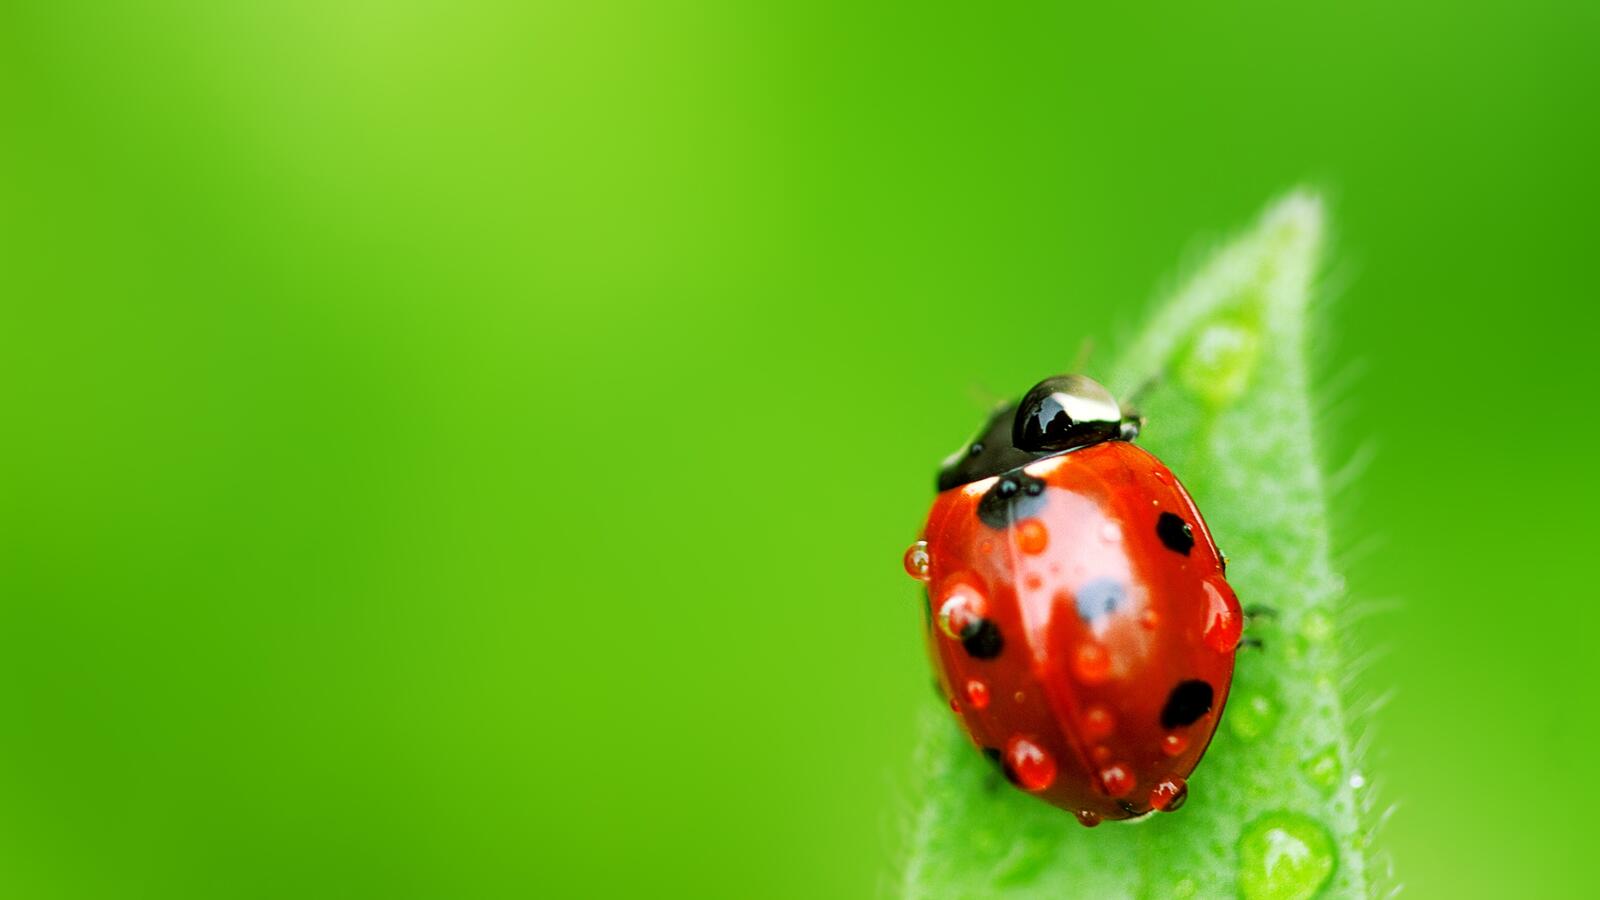 Free photo A ladybug crawls on a green leaf